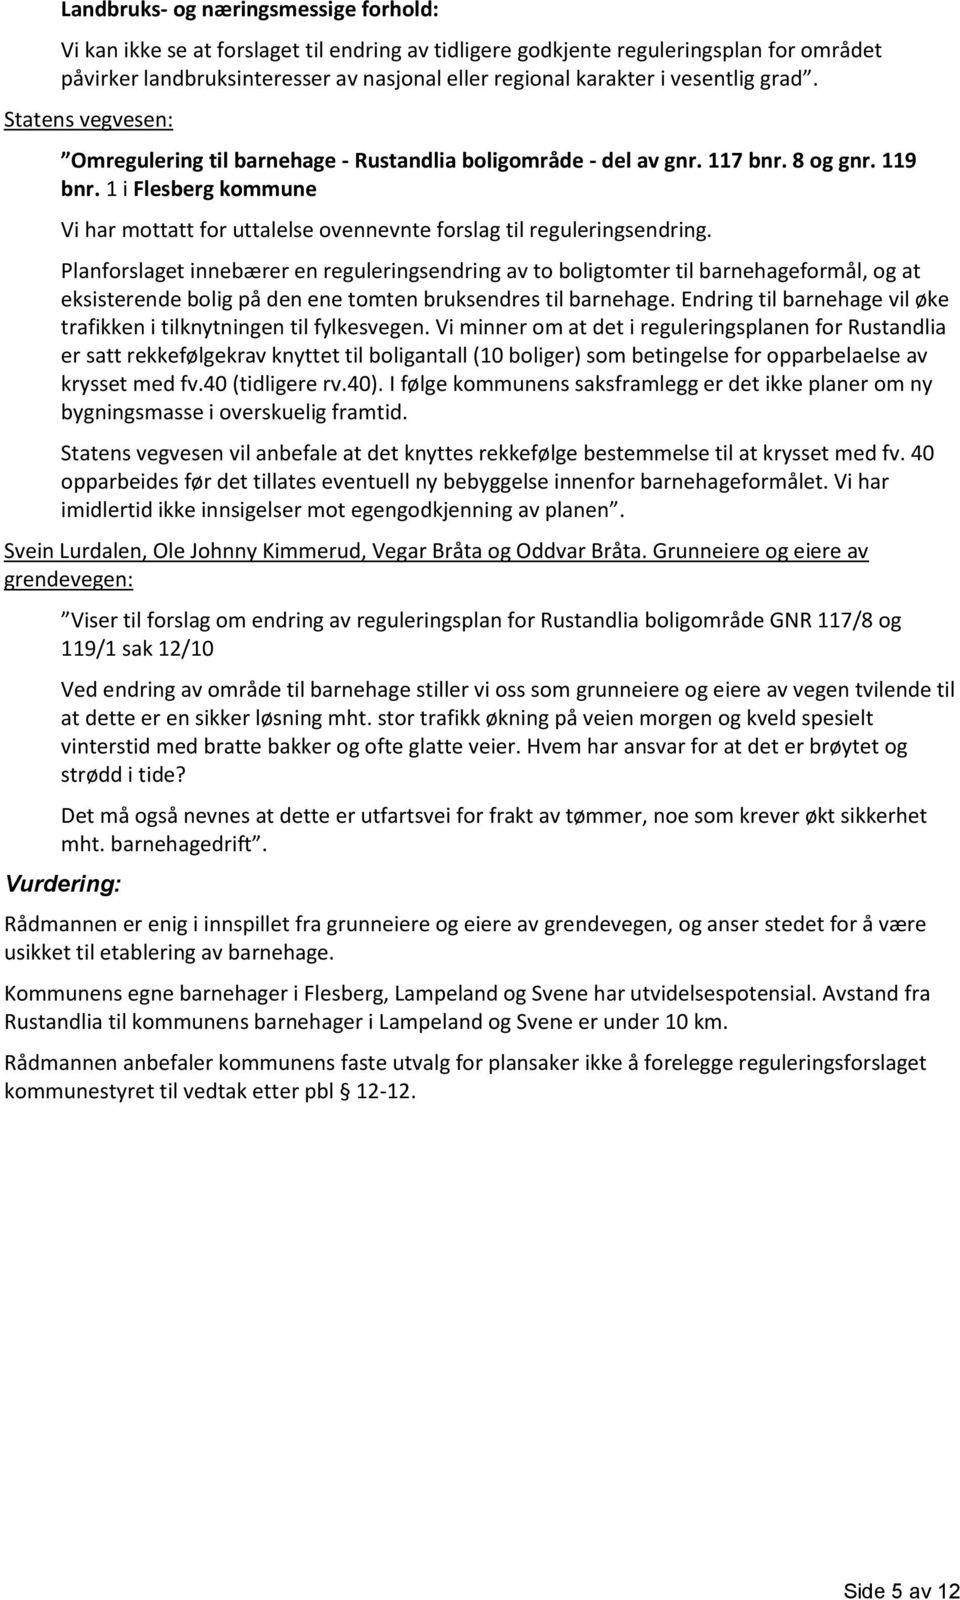 1 i Flesberg kommune Vi har mottatt for uttalelse ovennevnte forslag til reguleringsendring.